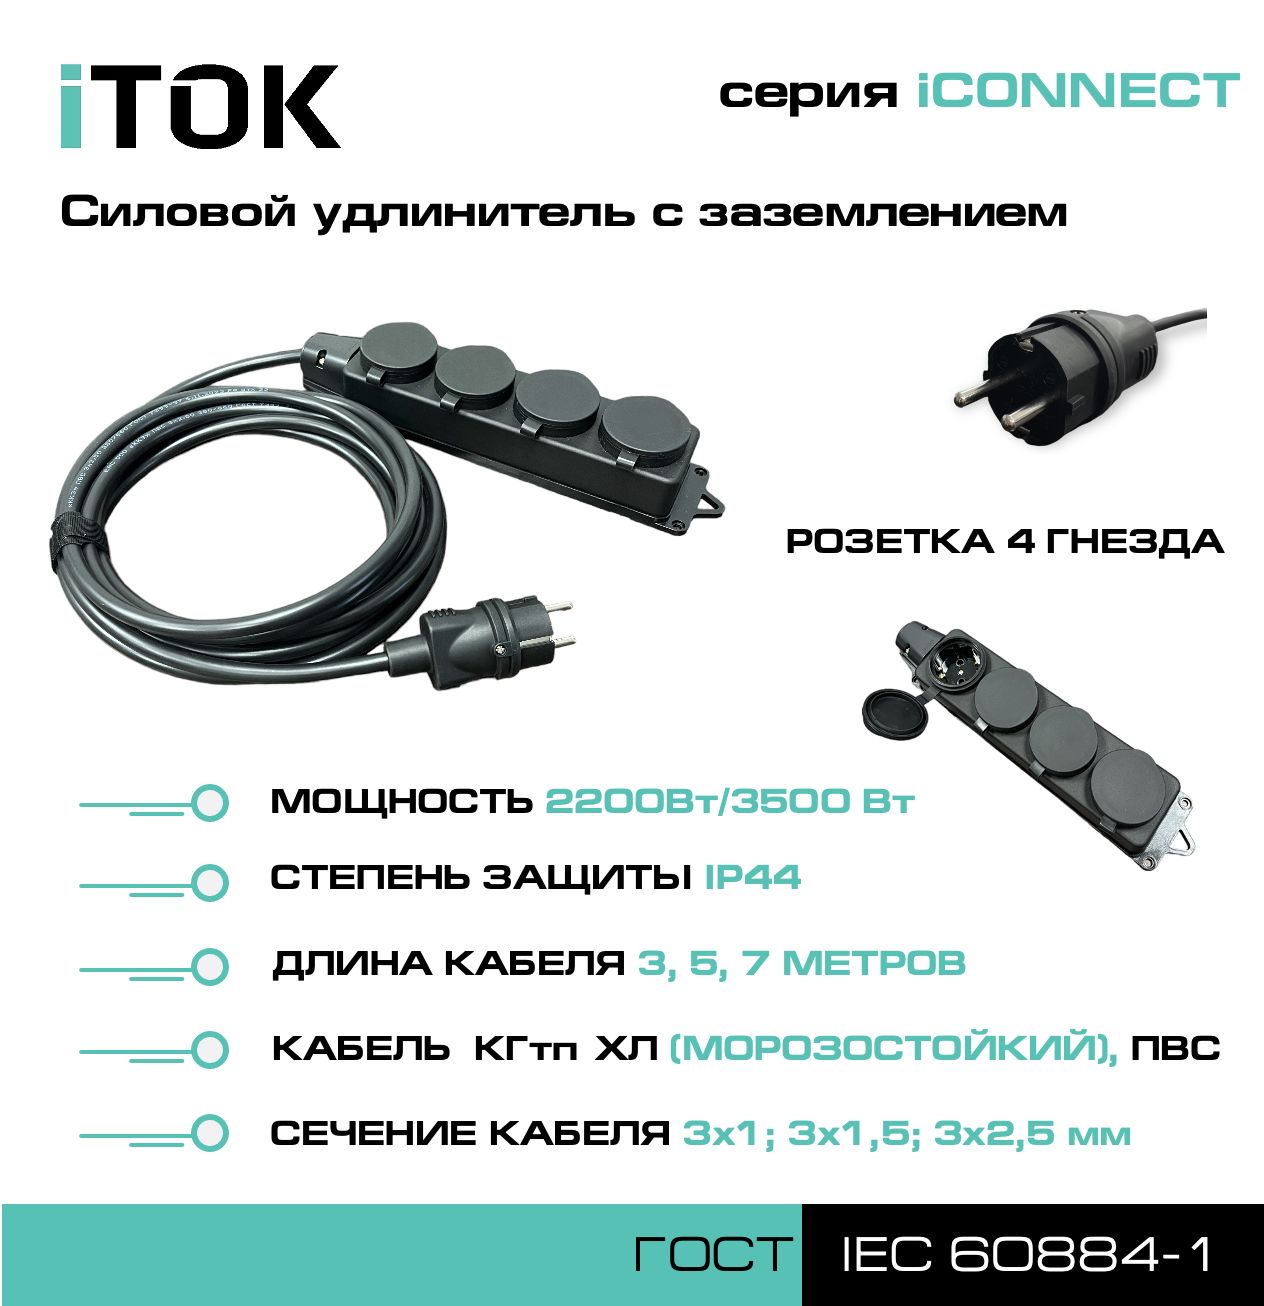 Удлинитель с заземлением серии iTOK iCONNECT КГтп-ХЛ 3х2,5 мм 4 гнезда IP44 7 м